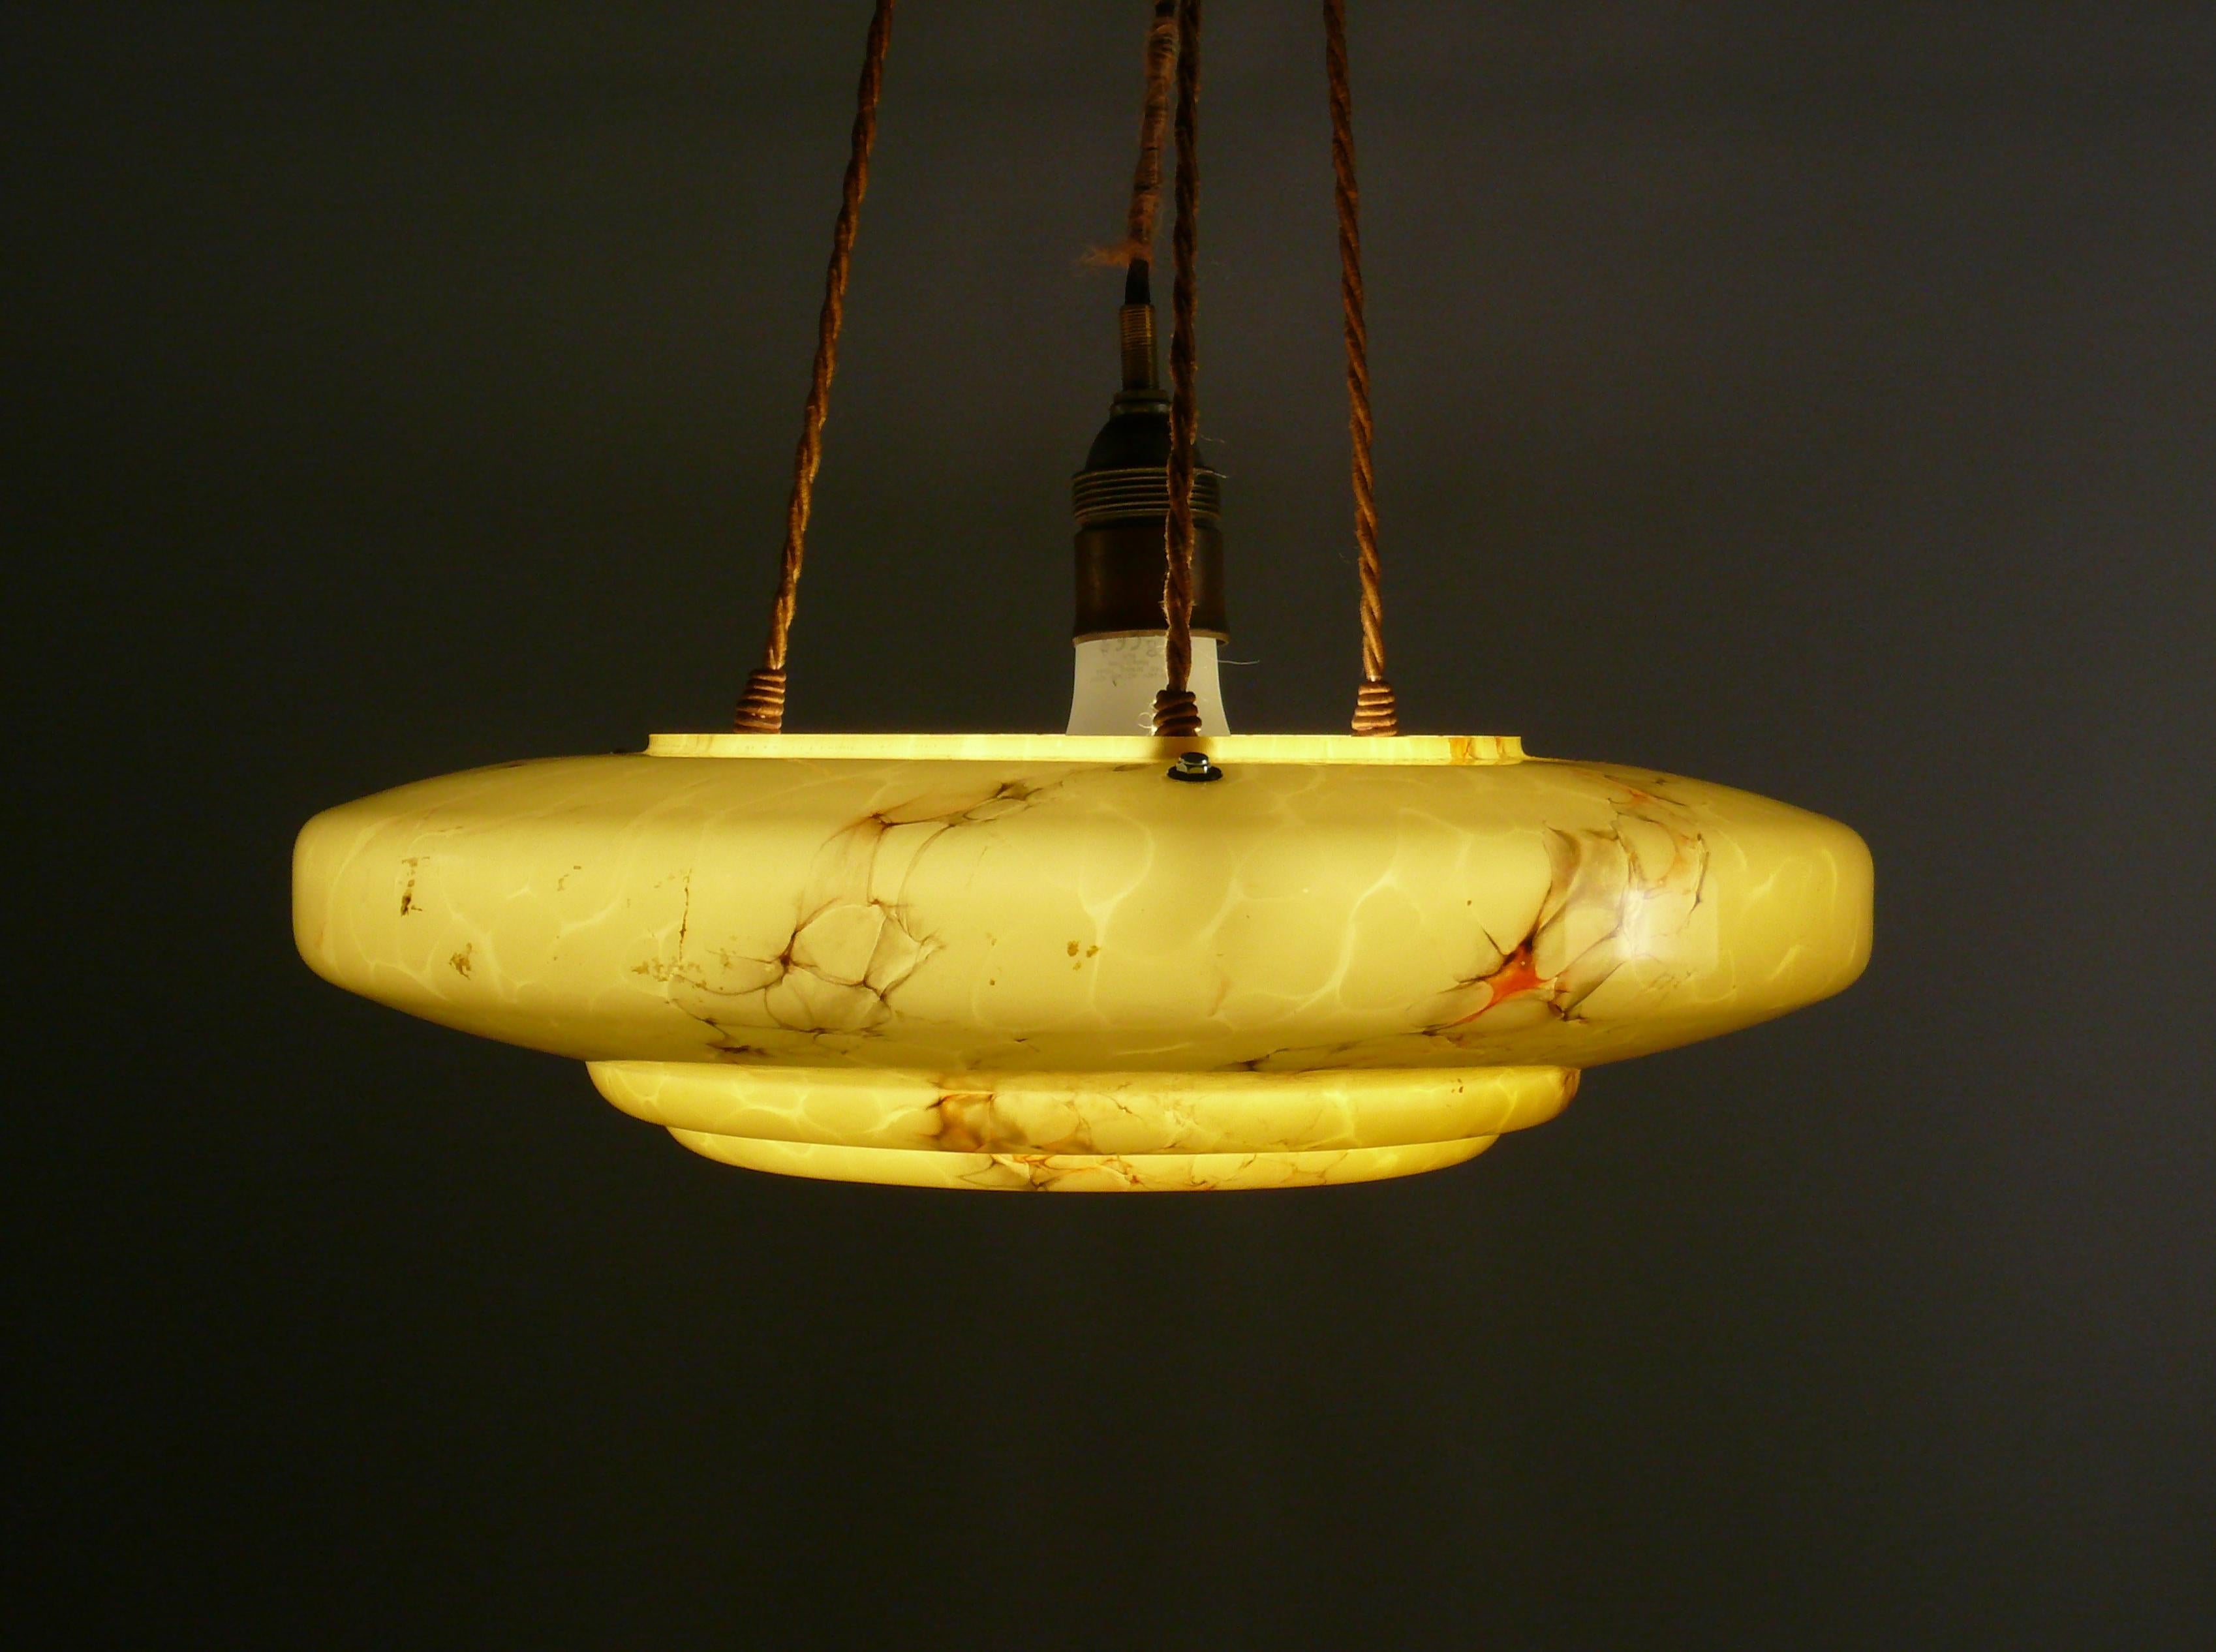 Grande et très belle lampe suspendue des années 1920-1940 avec un abat-jour en verre marbré dans le design typique de l'Art Déco et en très bon état. L'abat-jour en verre jaune foncé a une très belle forme et de subtiles marbrures. Le verre est